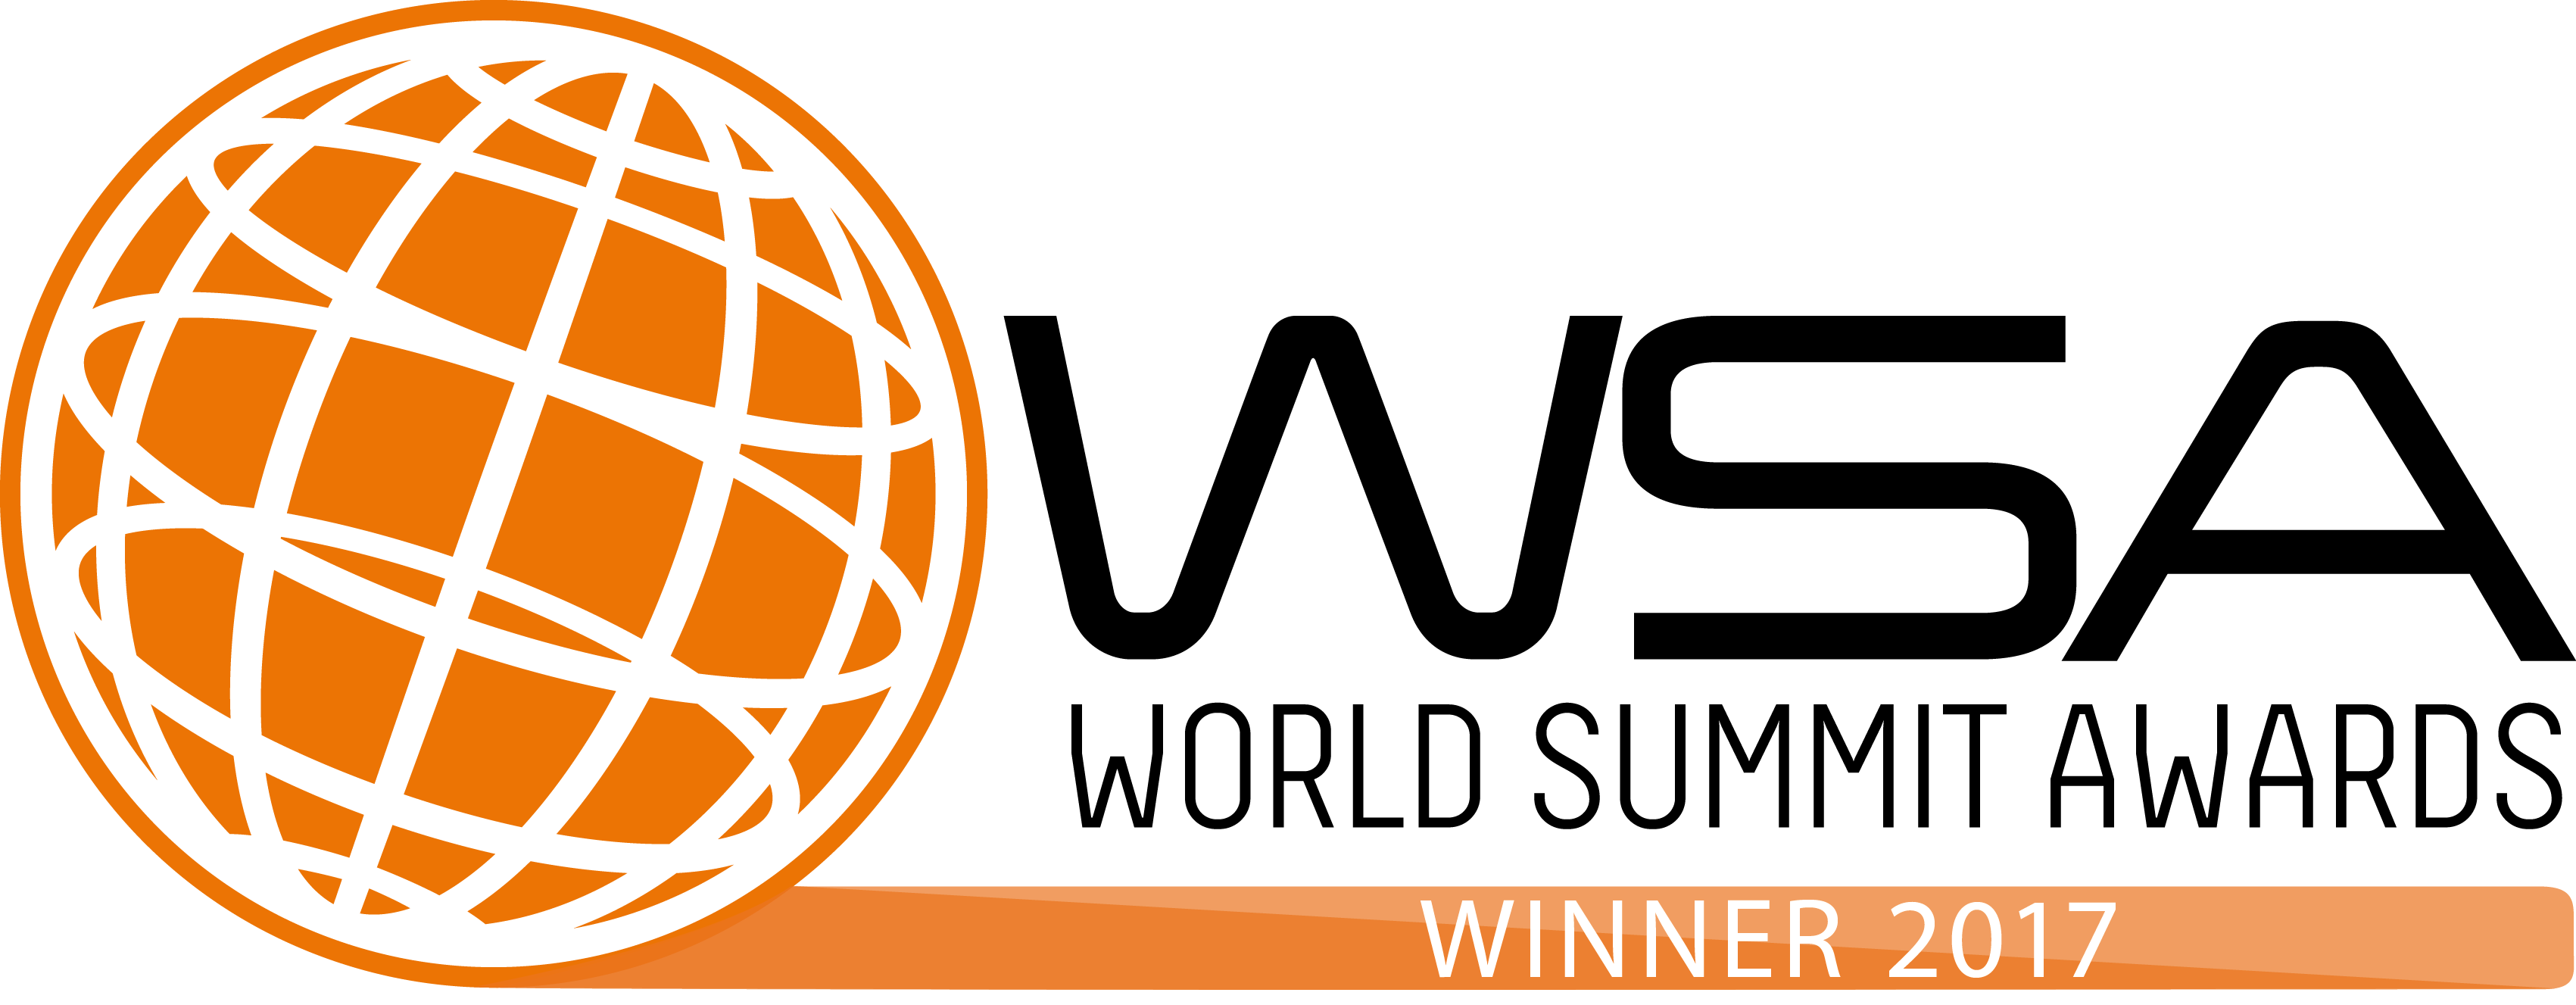 Logotipo do Premio wsa